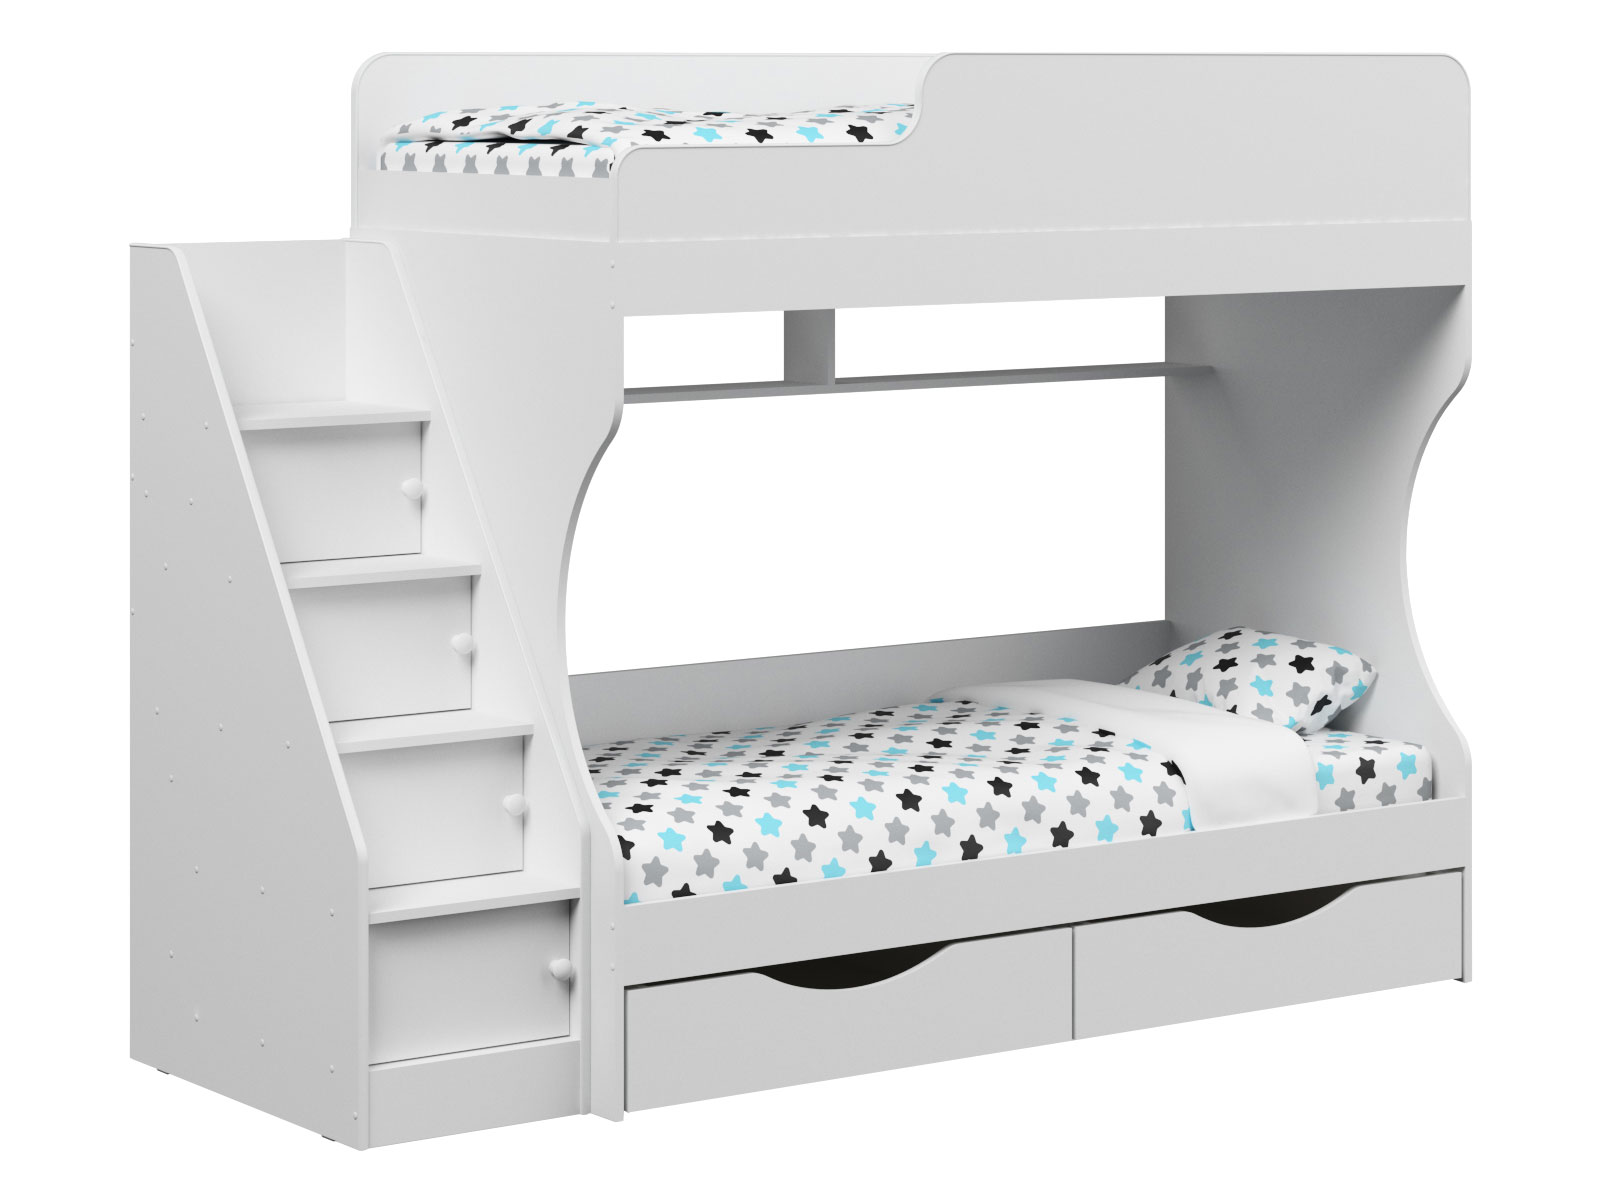 Двухъярусная кровать с диваном ступеньки